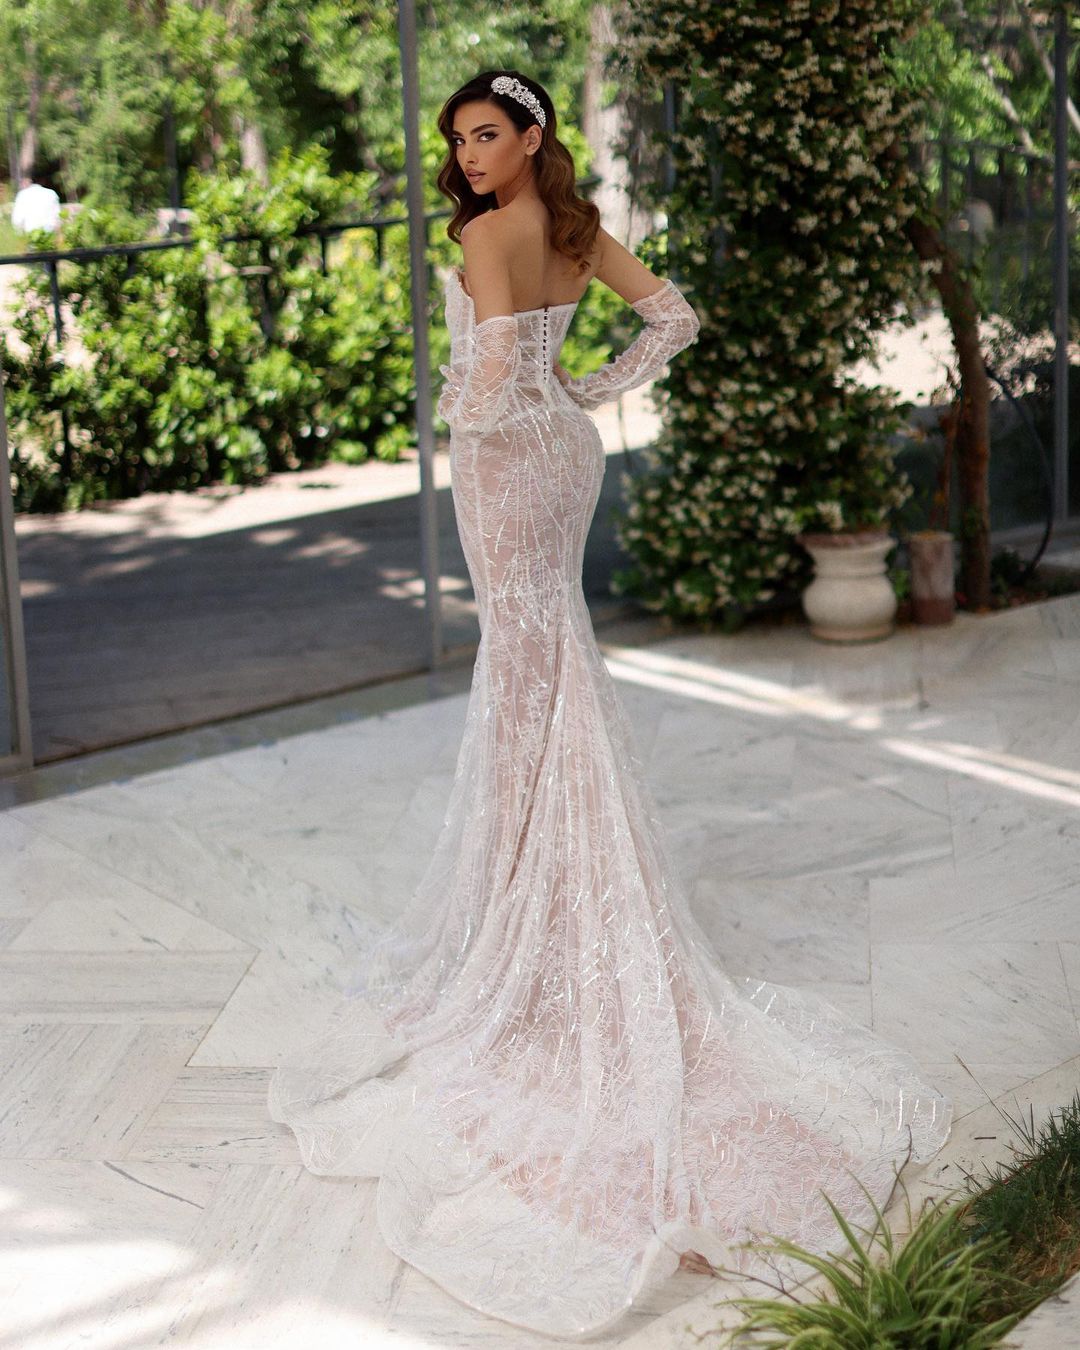 Daçiana Beautiful Wedding Dress – D&D Clothing